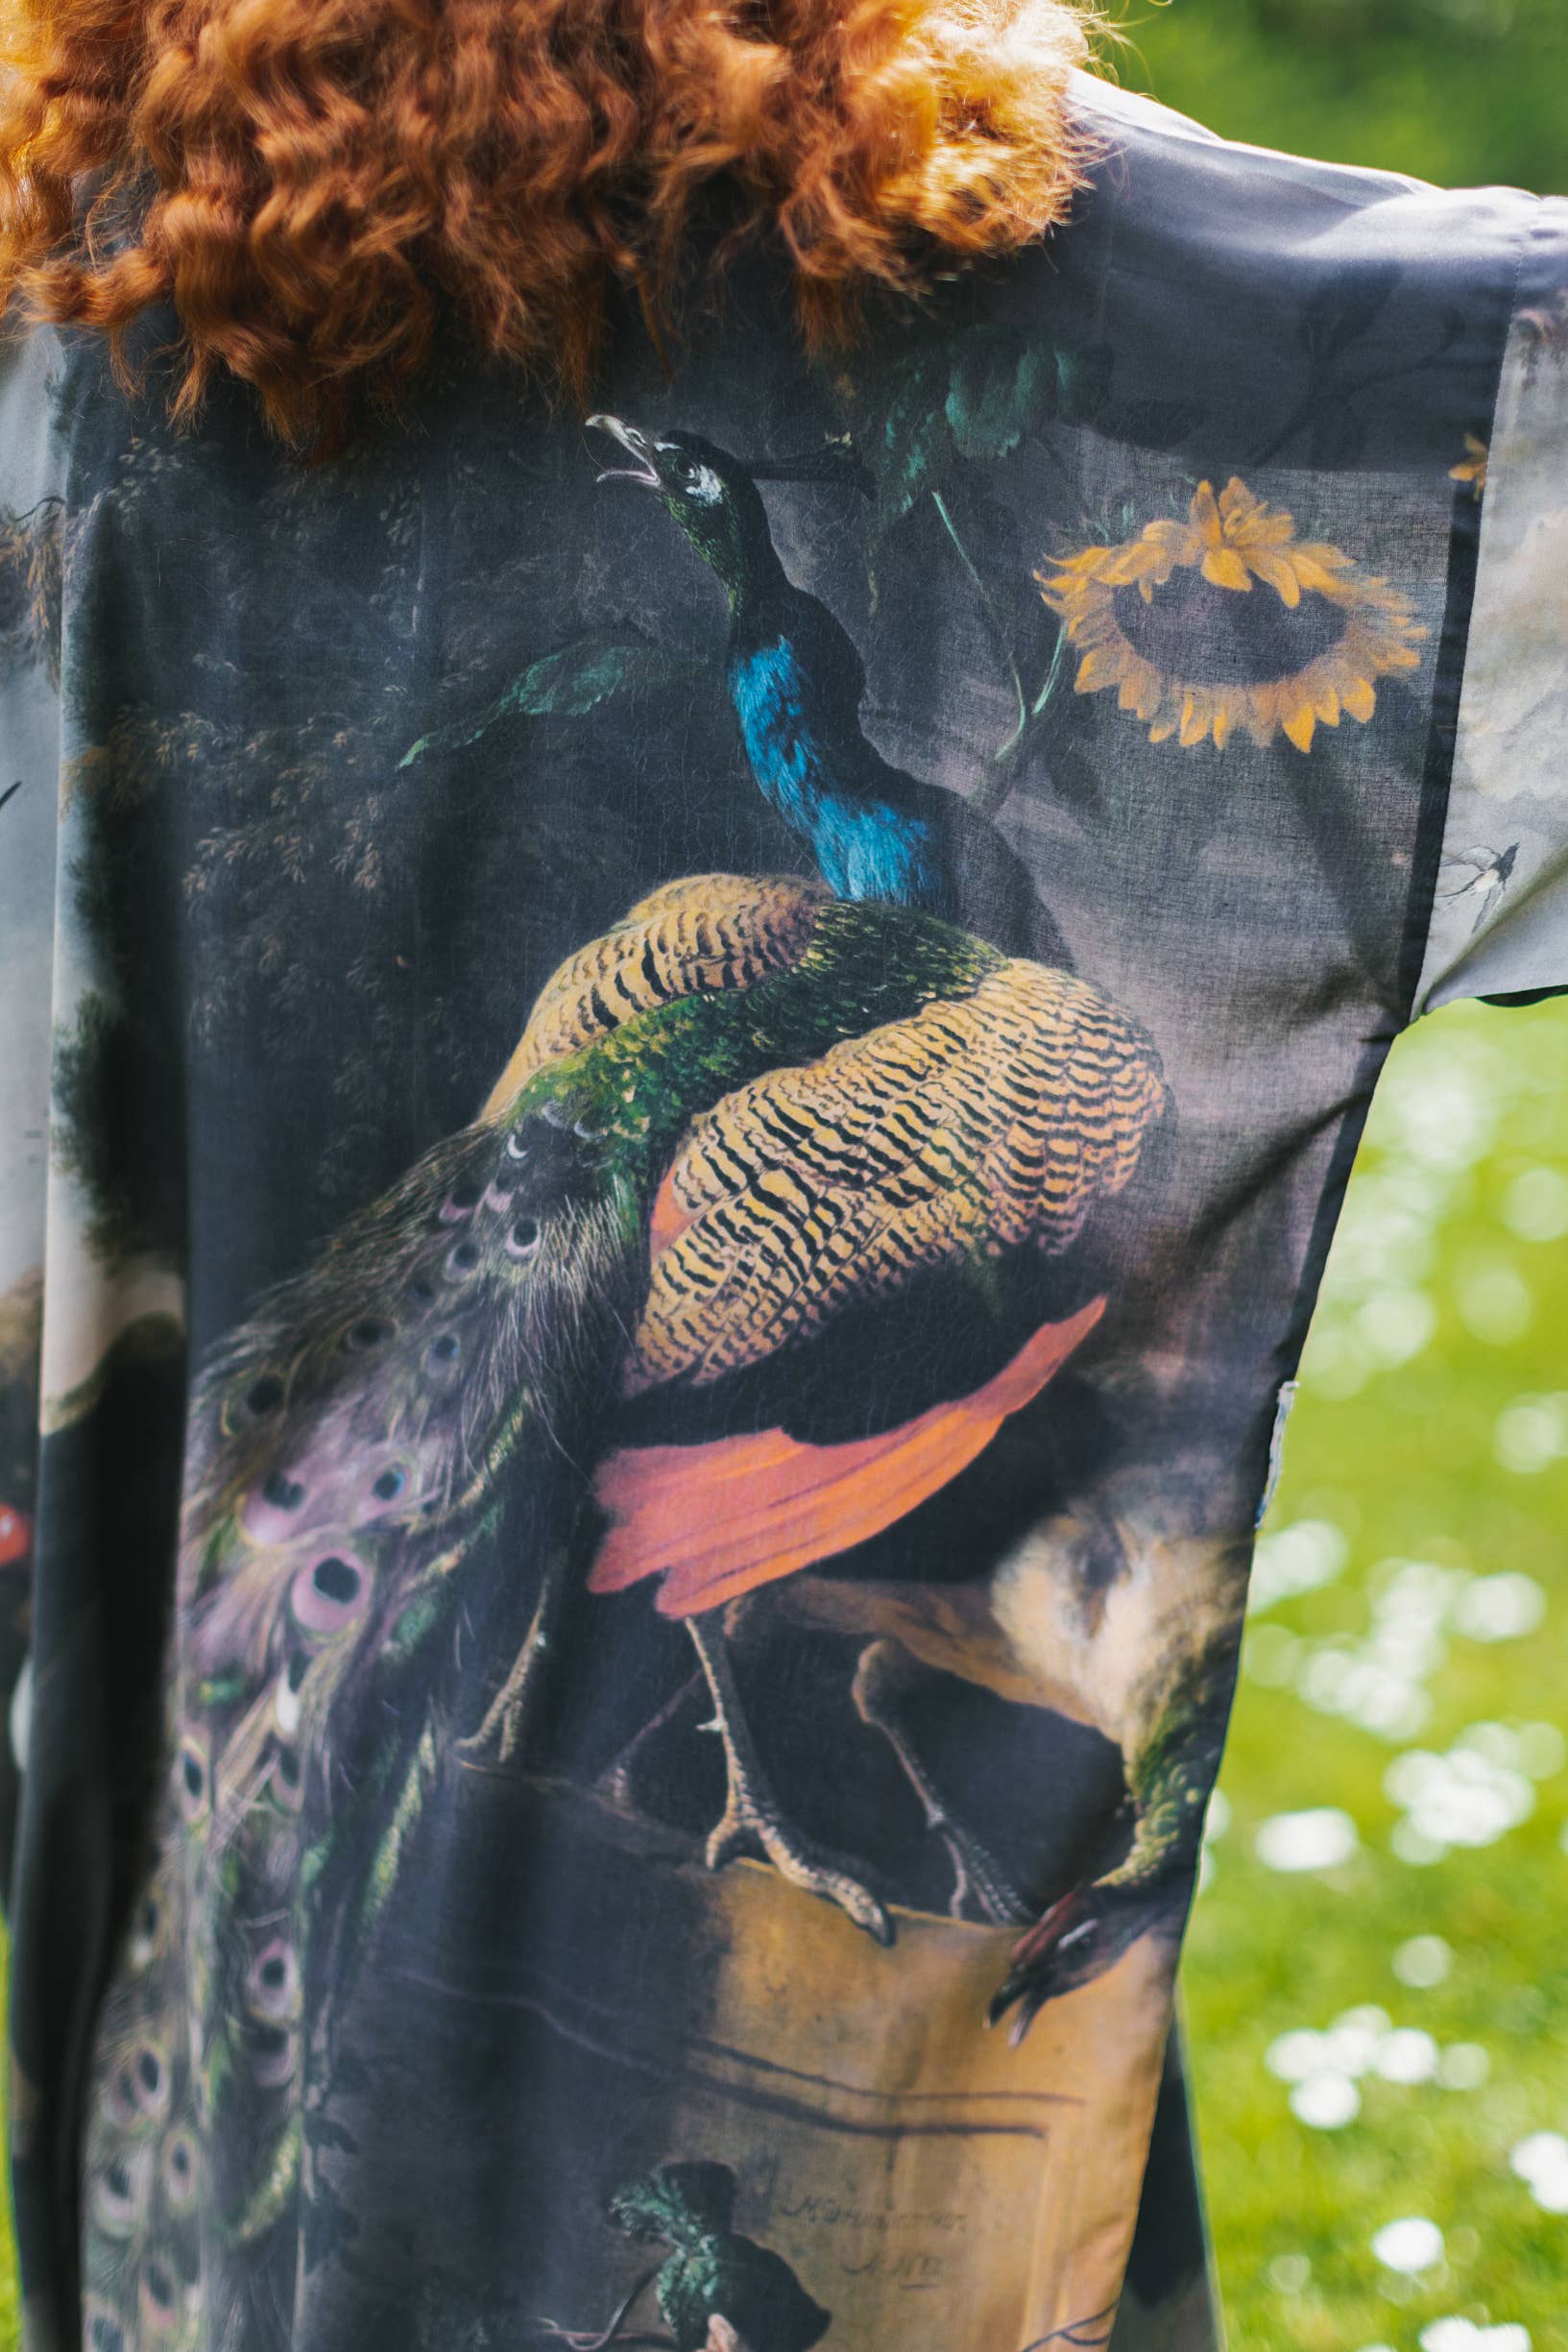 Market of Stars - Wild Beauty Bamboo Kimono Duster Robe with Peacock Print